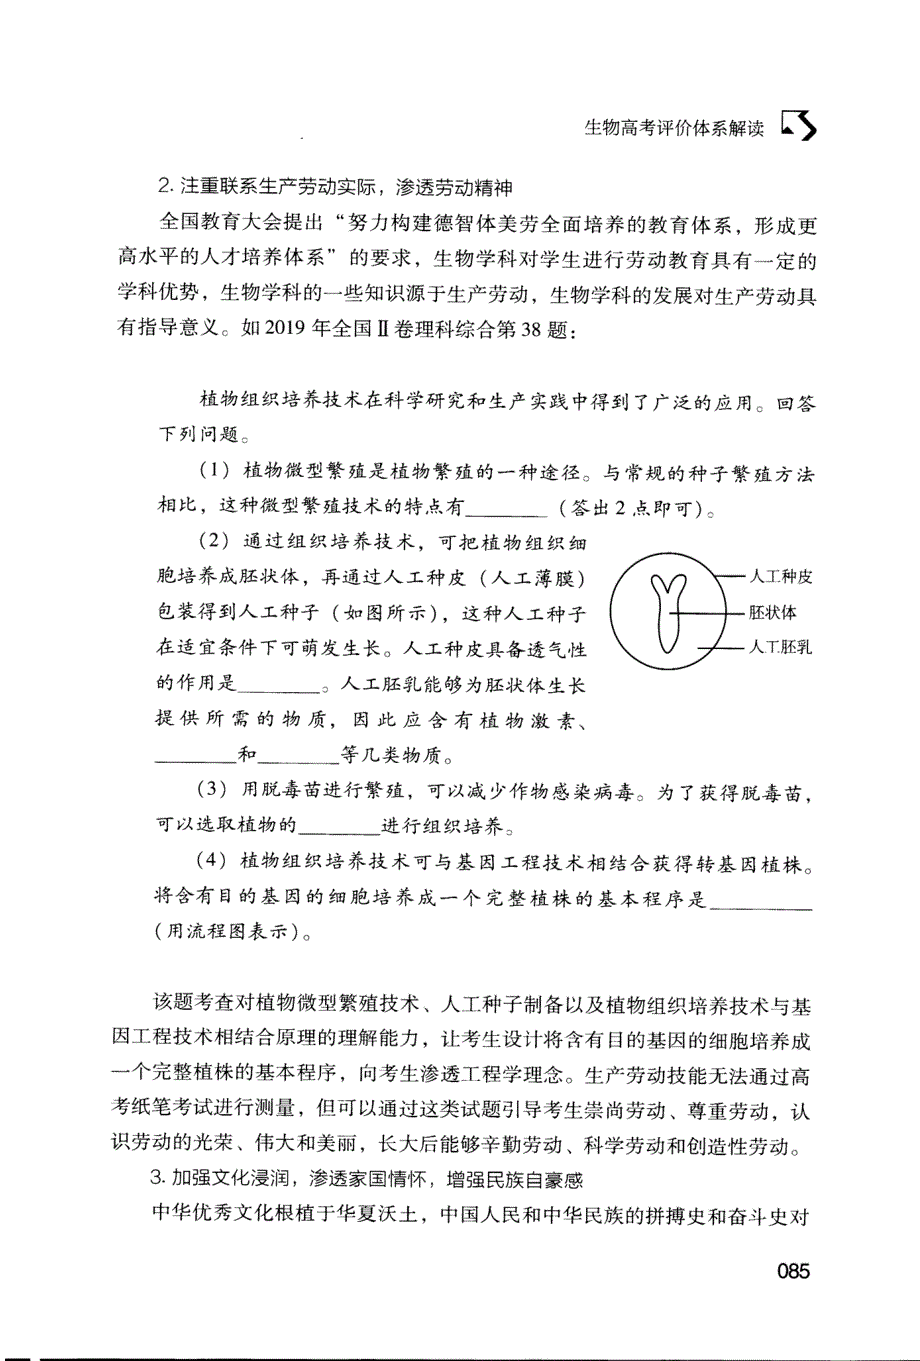 《中国高考评价体系》下生物学科评价体系解读_第2页